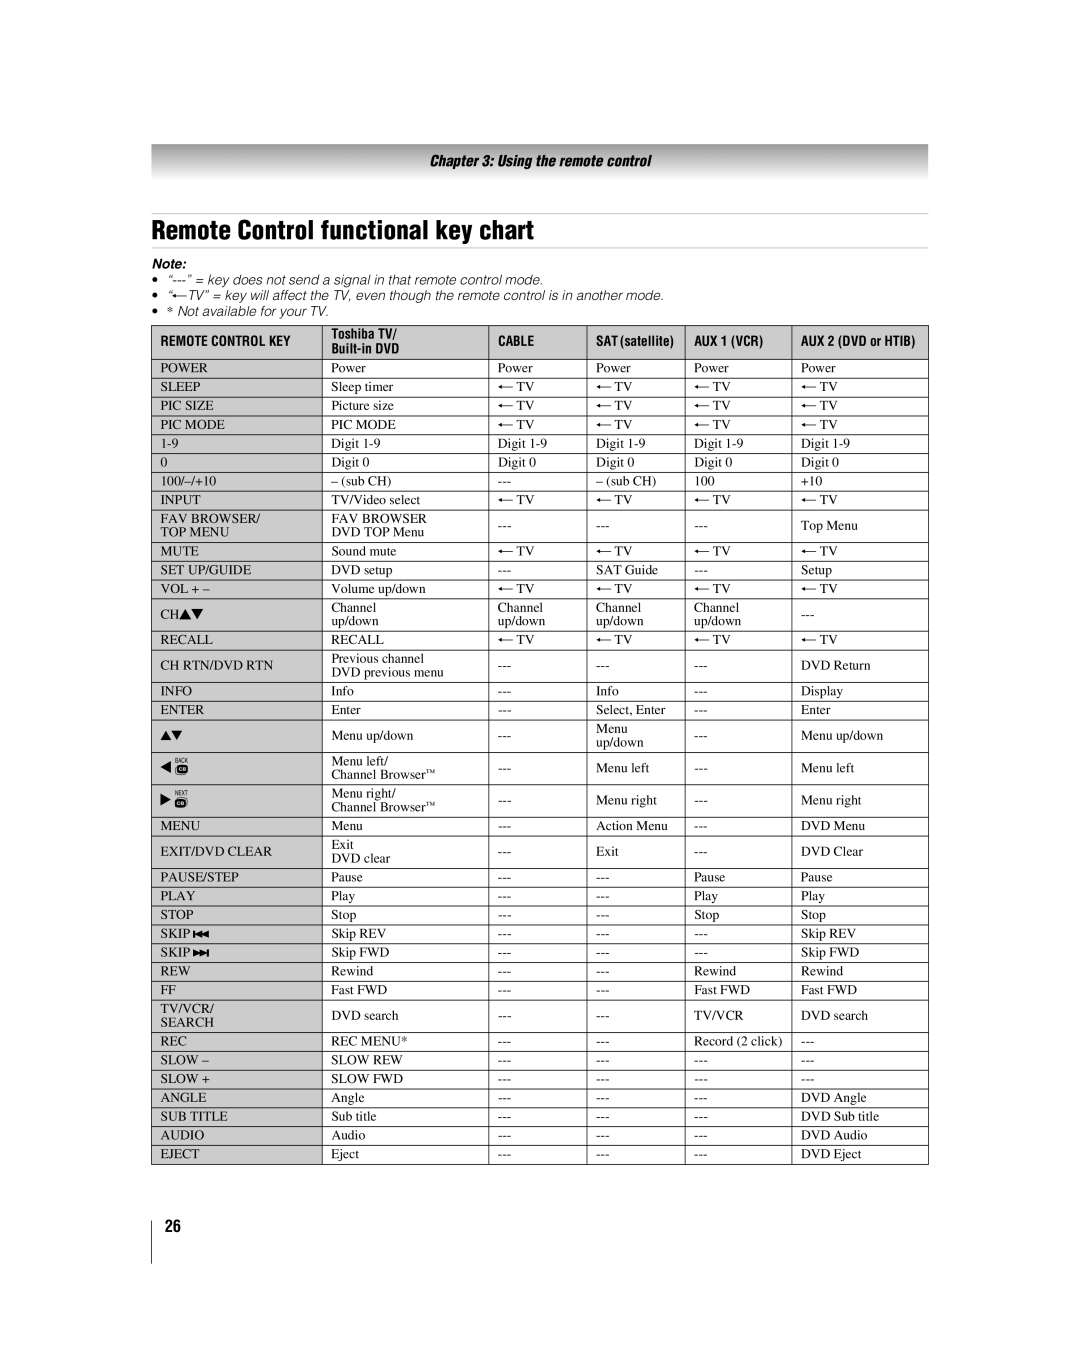 Toshiba 26LV67, 32LV67U manual Remote Control functional key chart, Using the remote control 